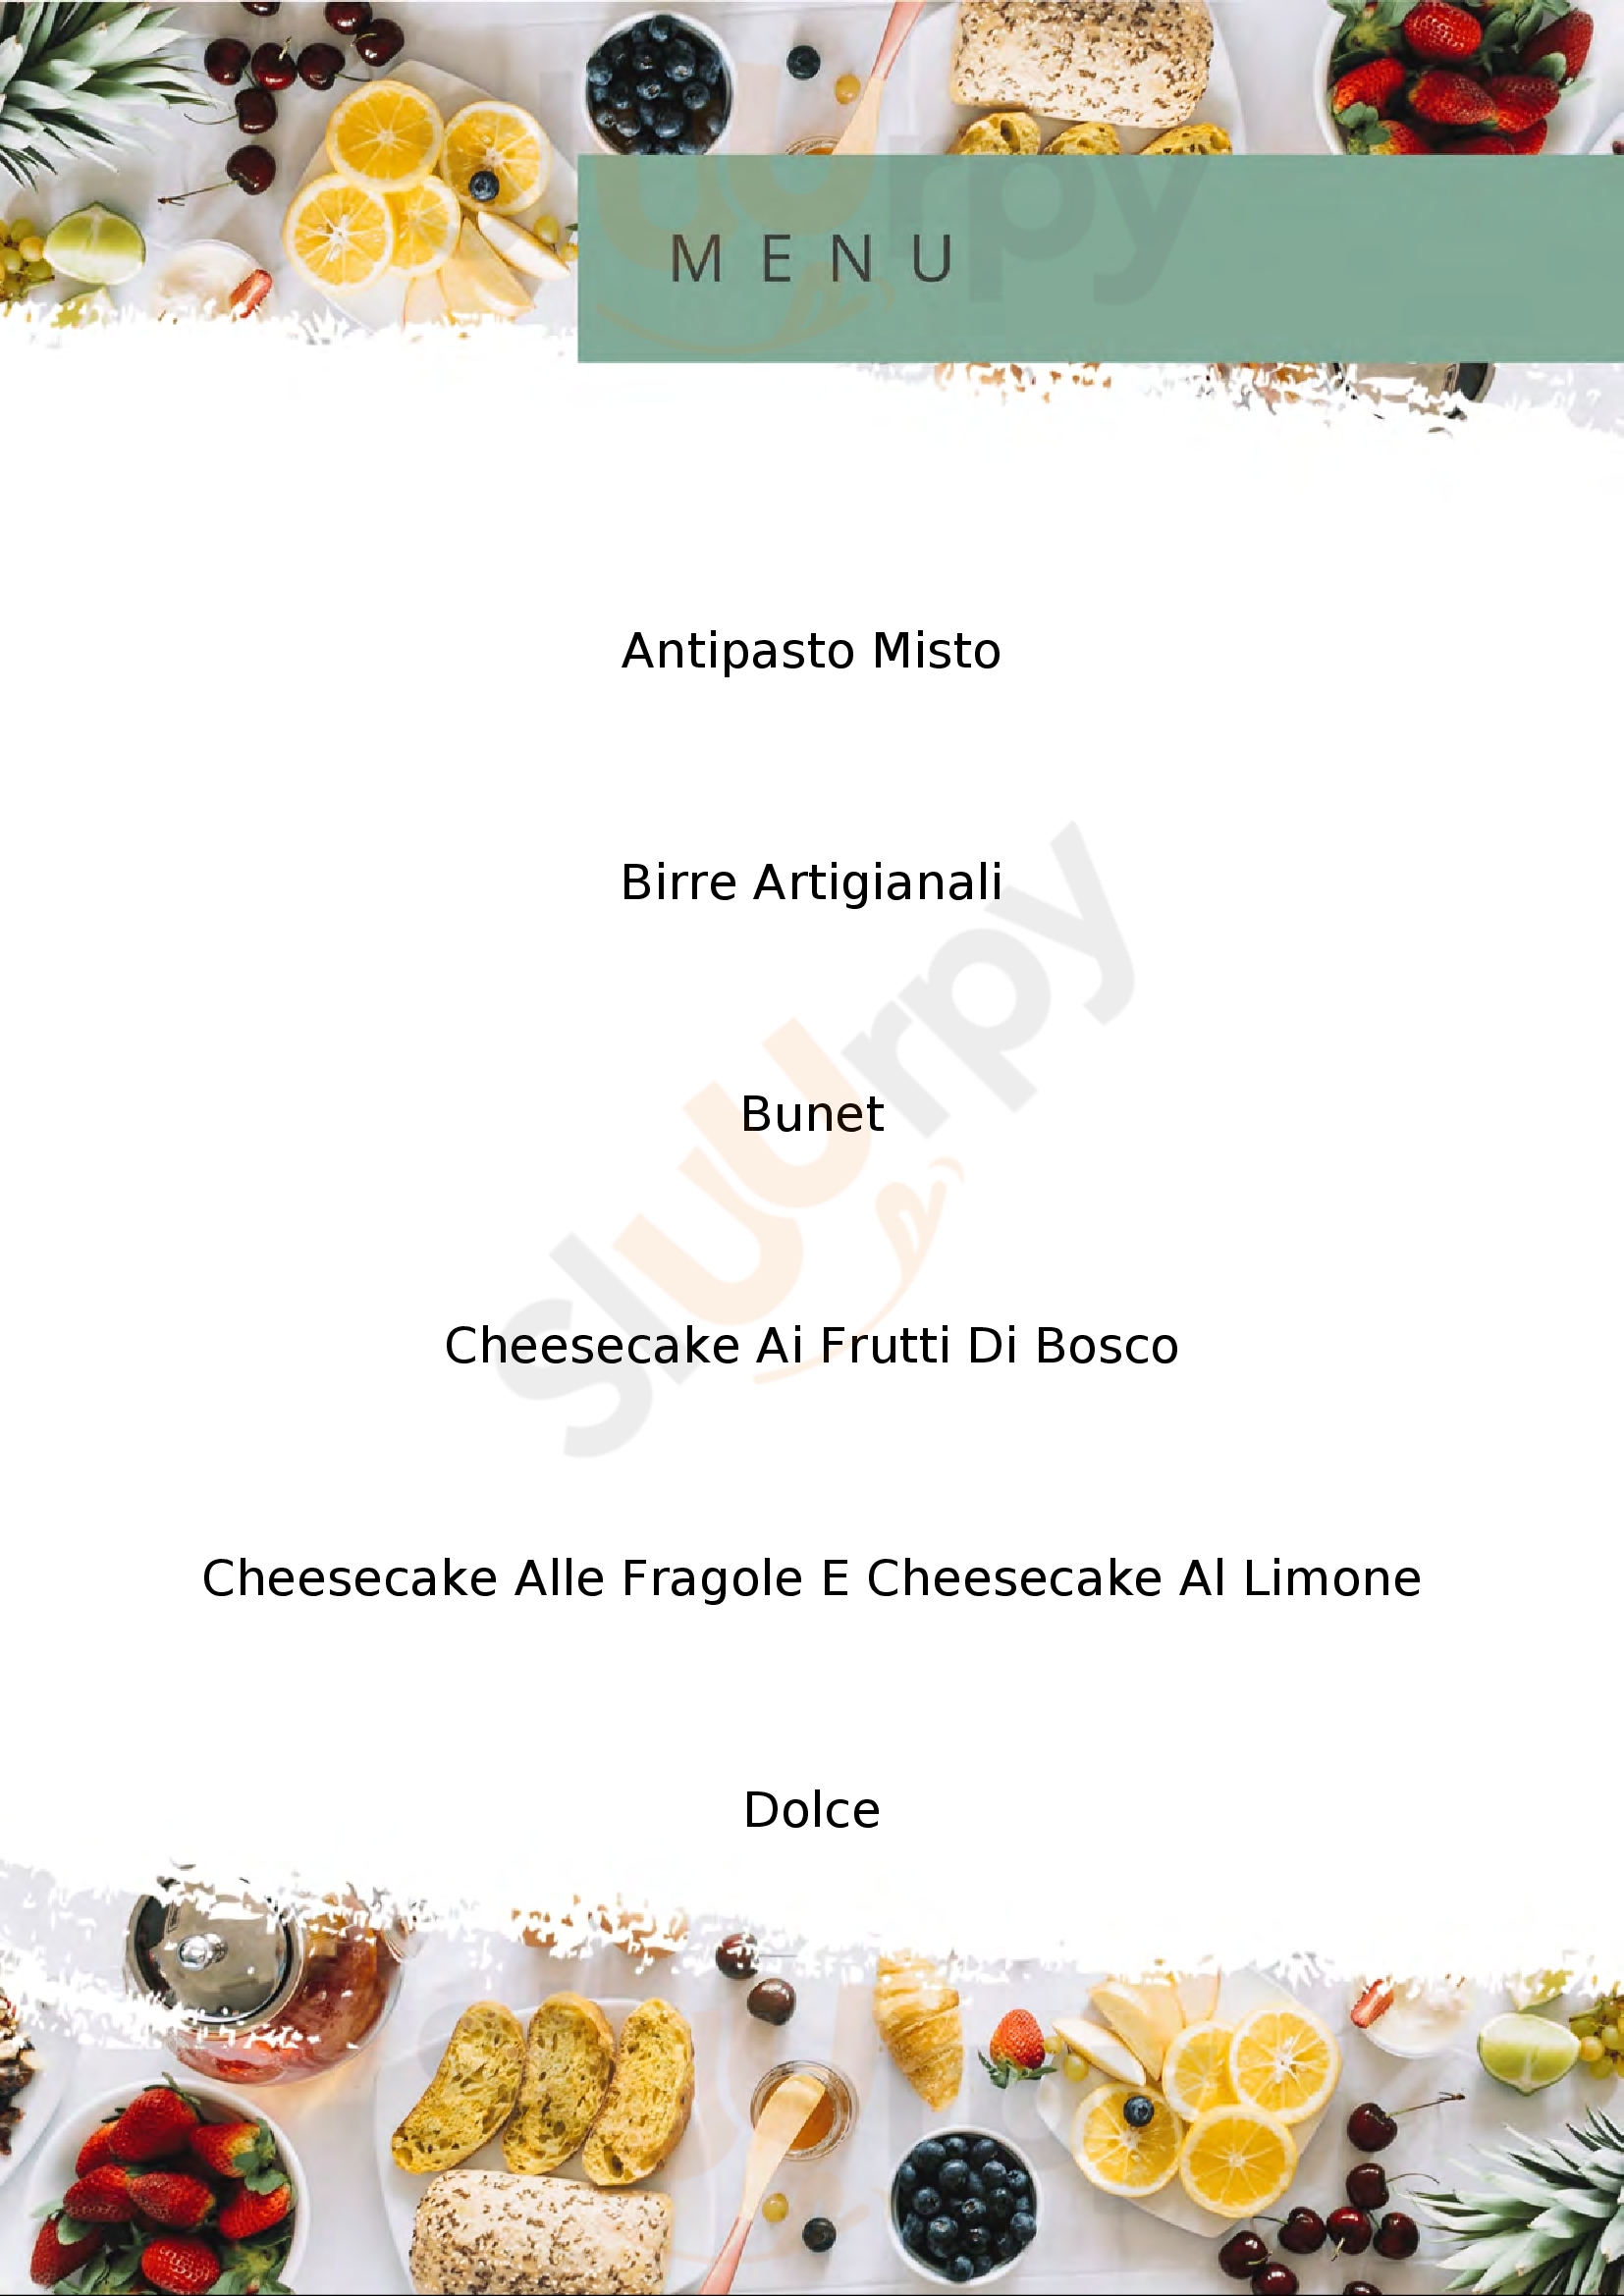 Pizzeria Grotta Azzurra Cuneo menù 1 pagina